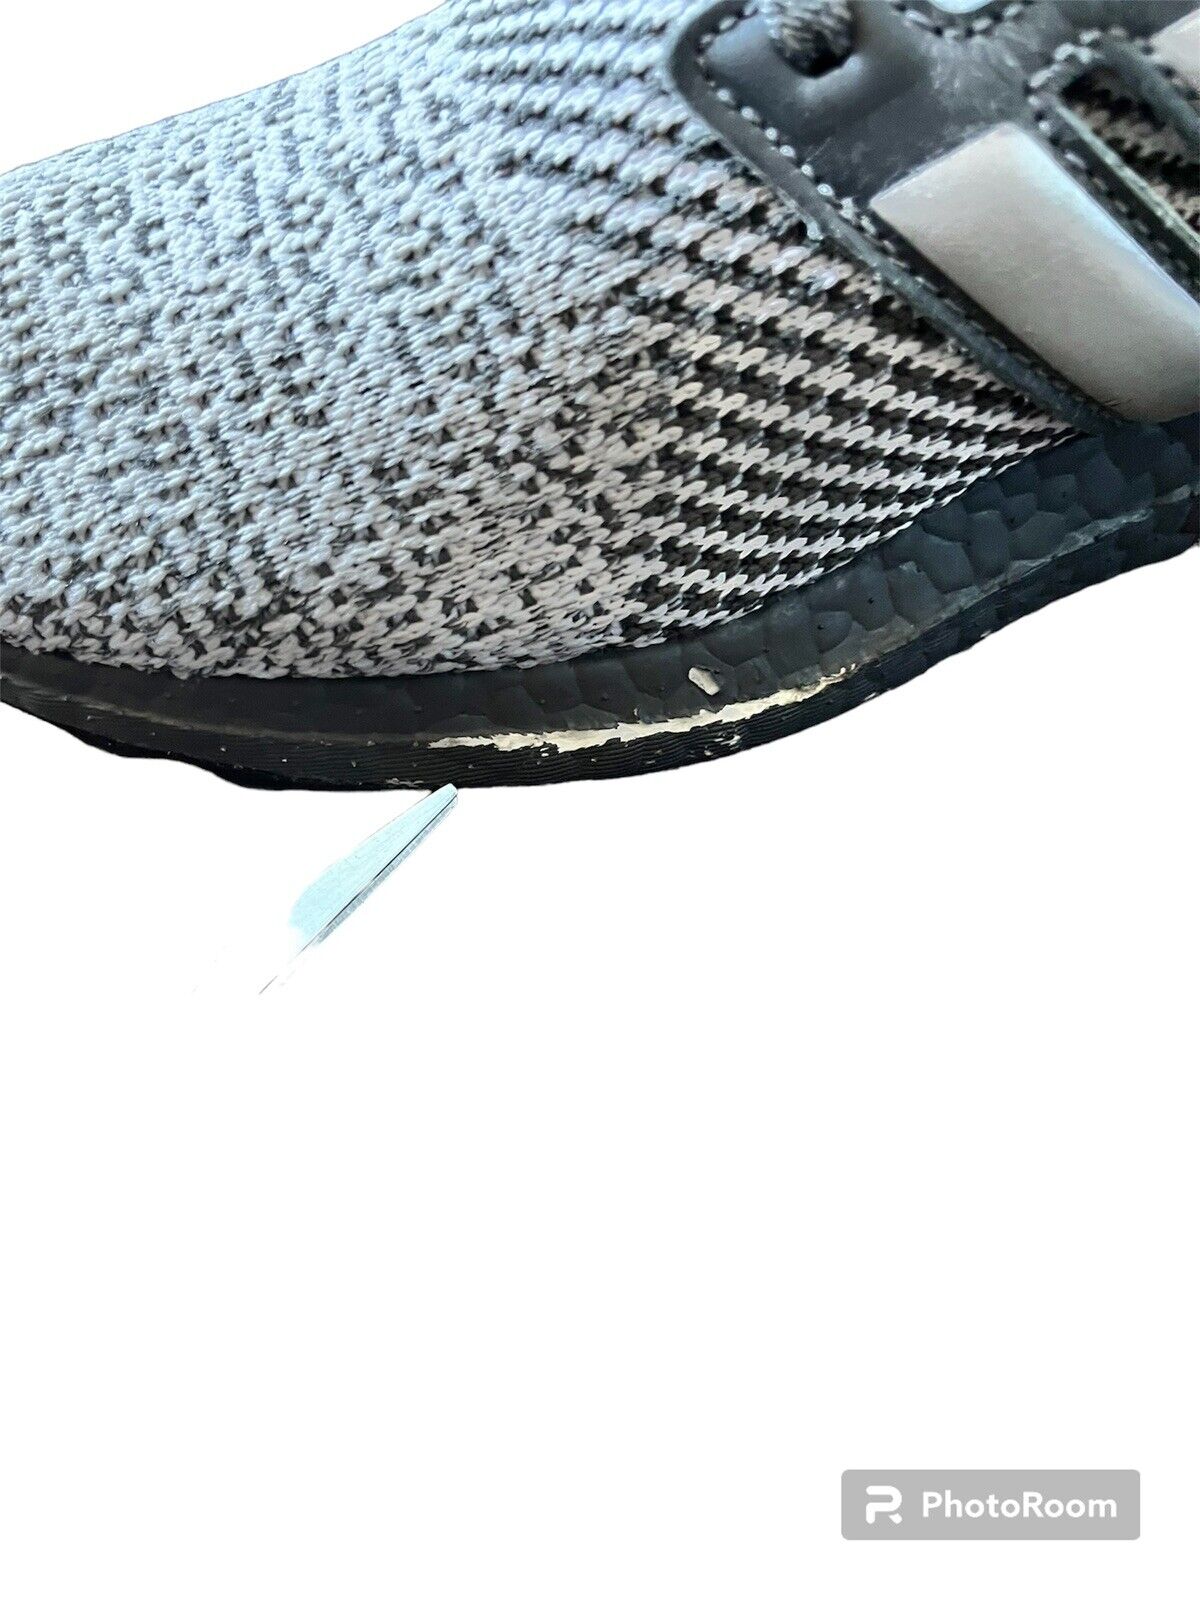 Adidas Ultra Boost Gray Men’s 11 Running Walking Casual | eBay